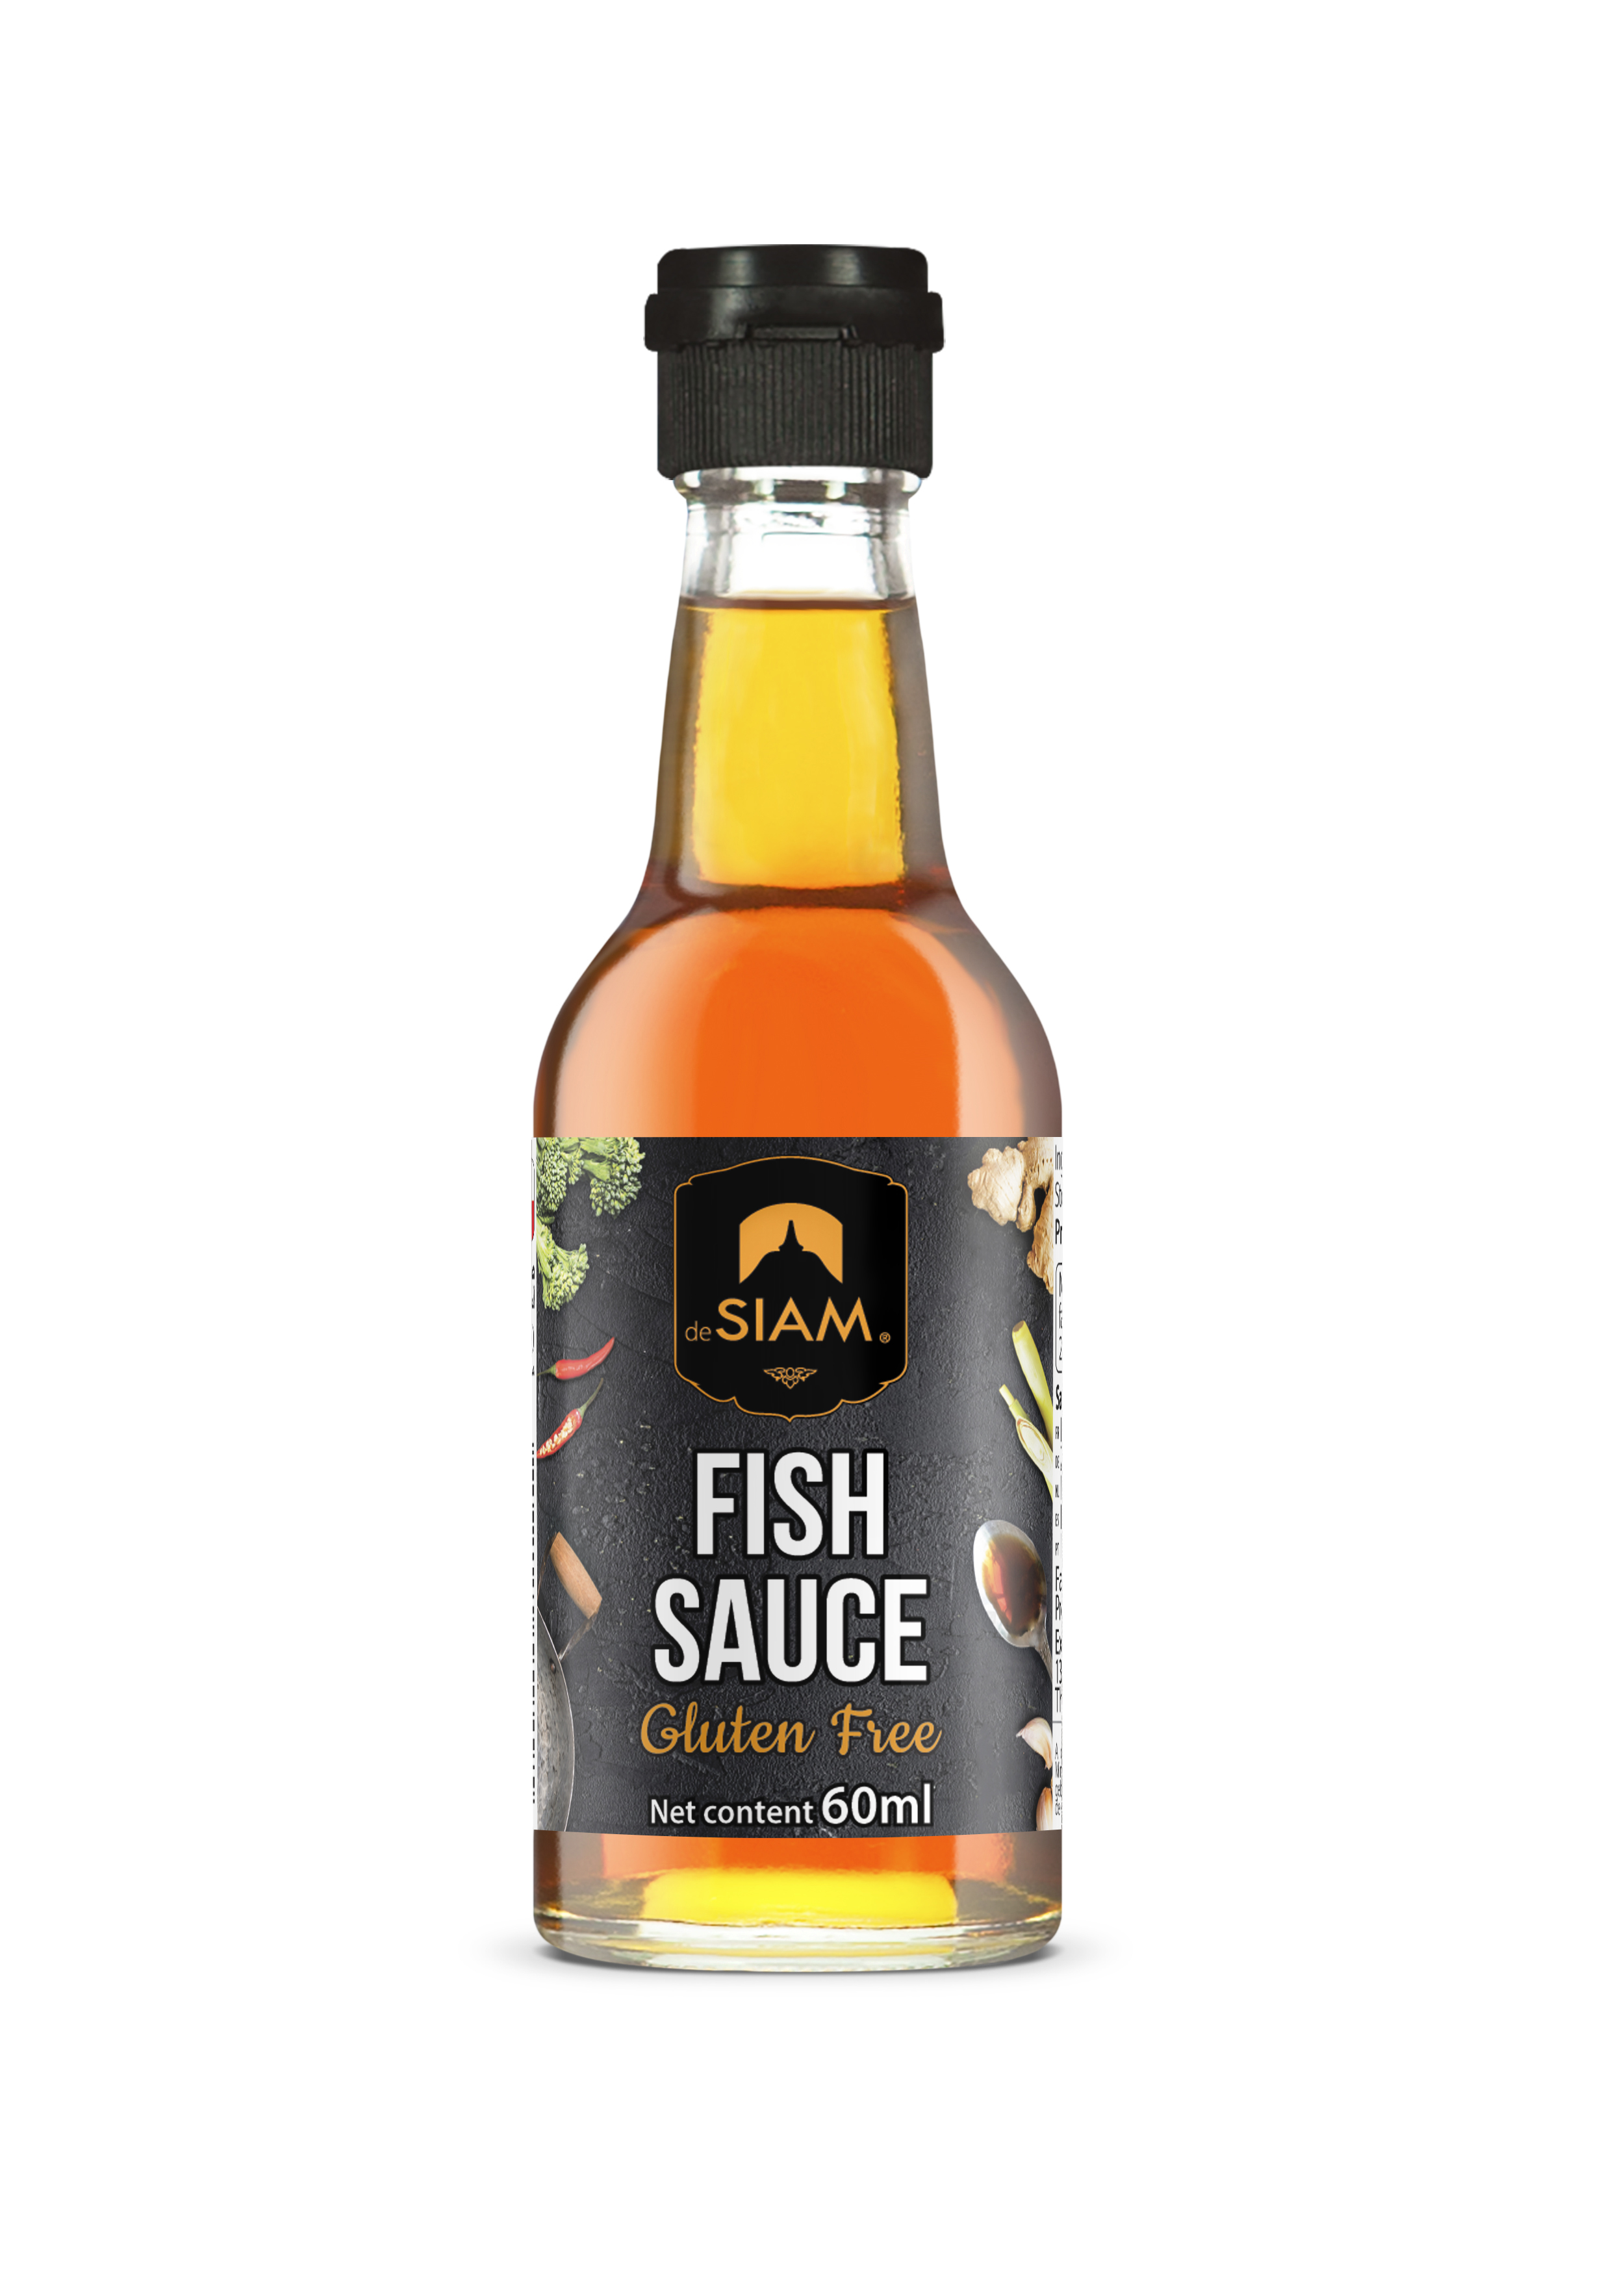 De Siam Fish Sauce 60ml